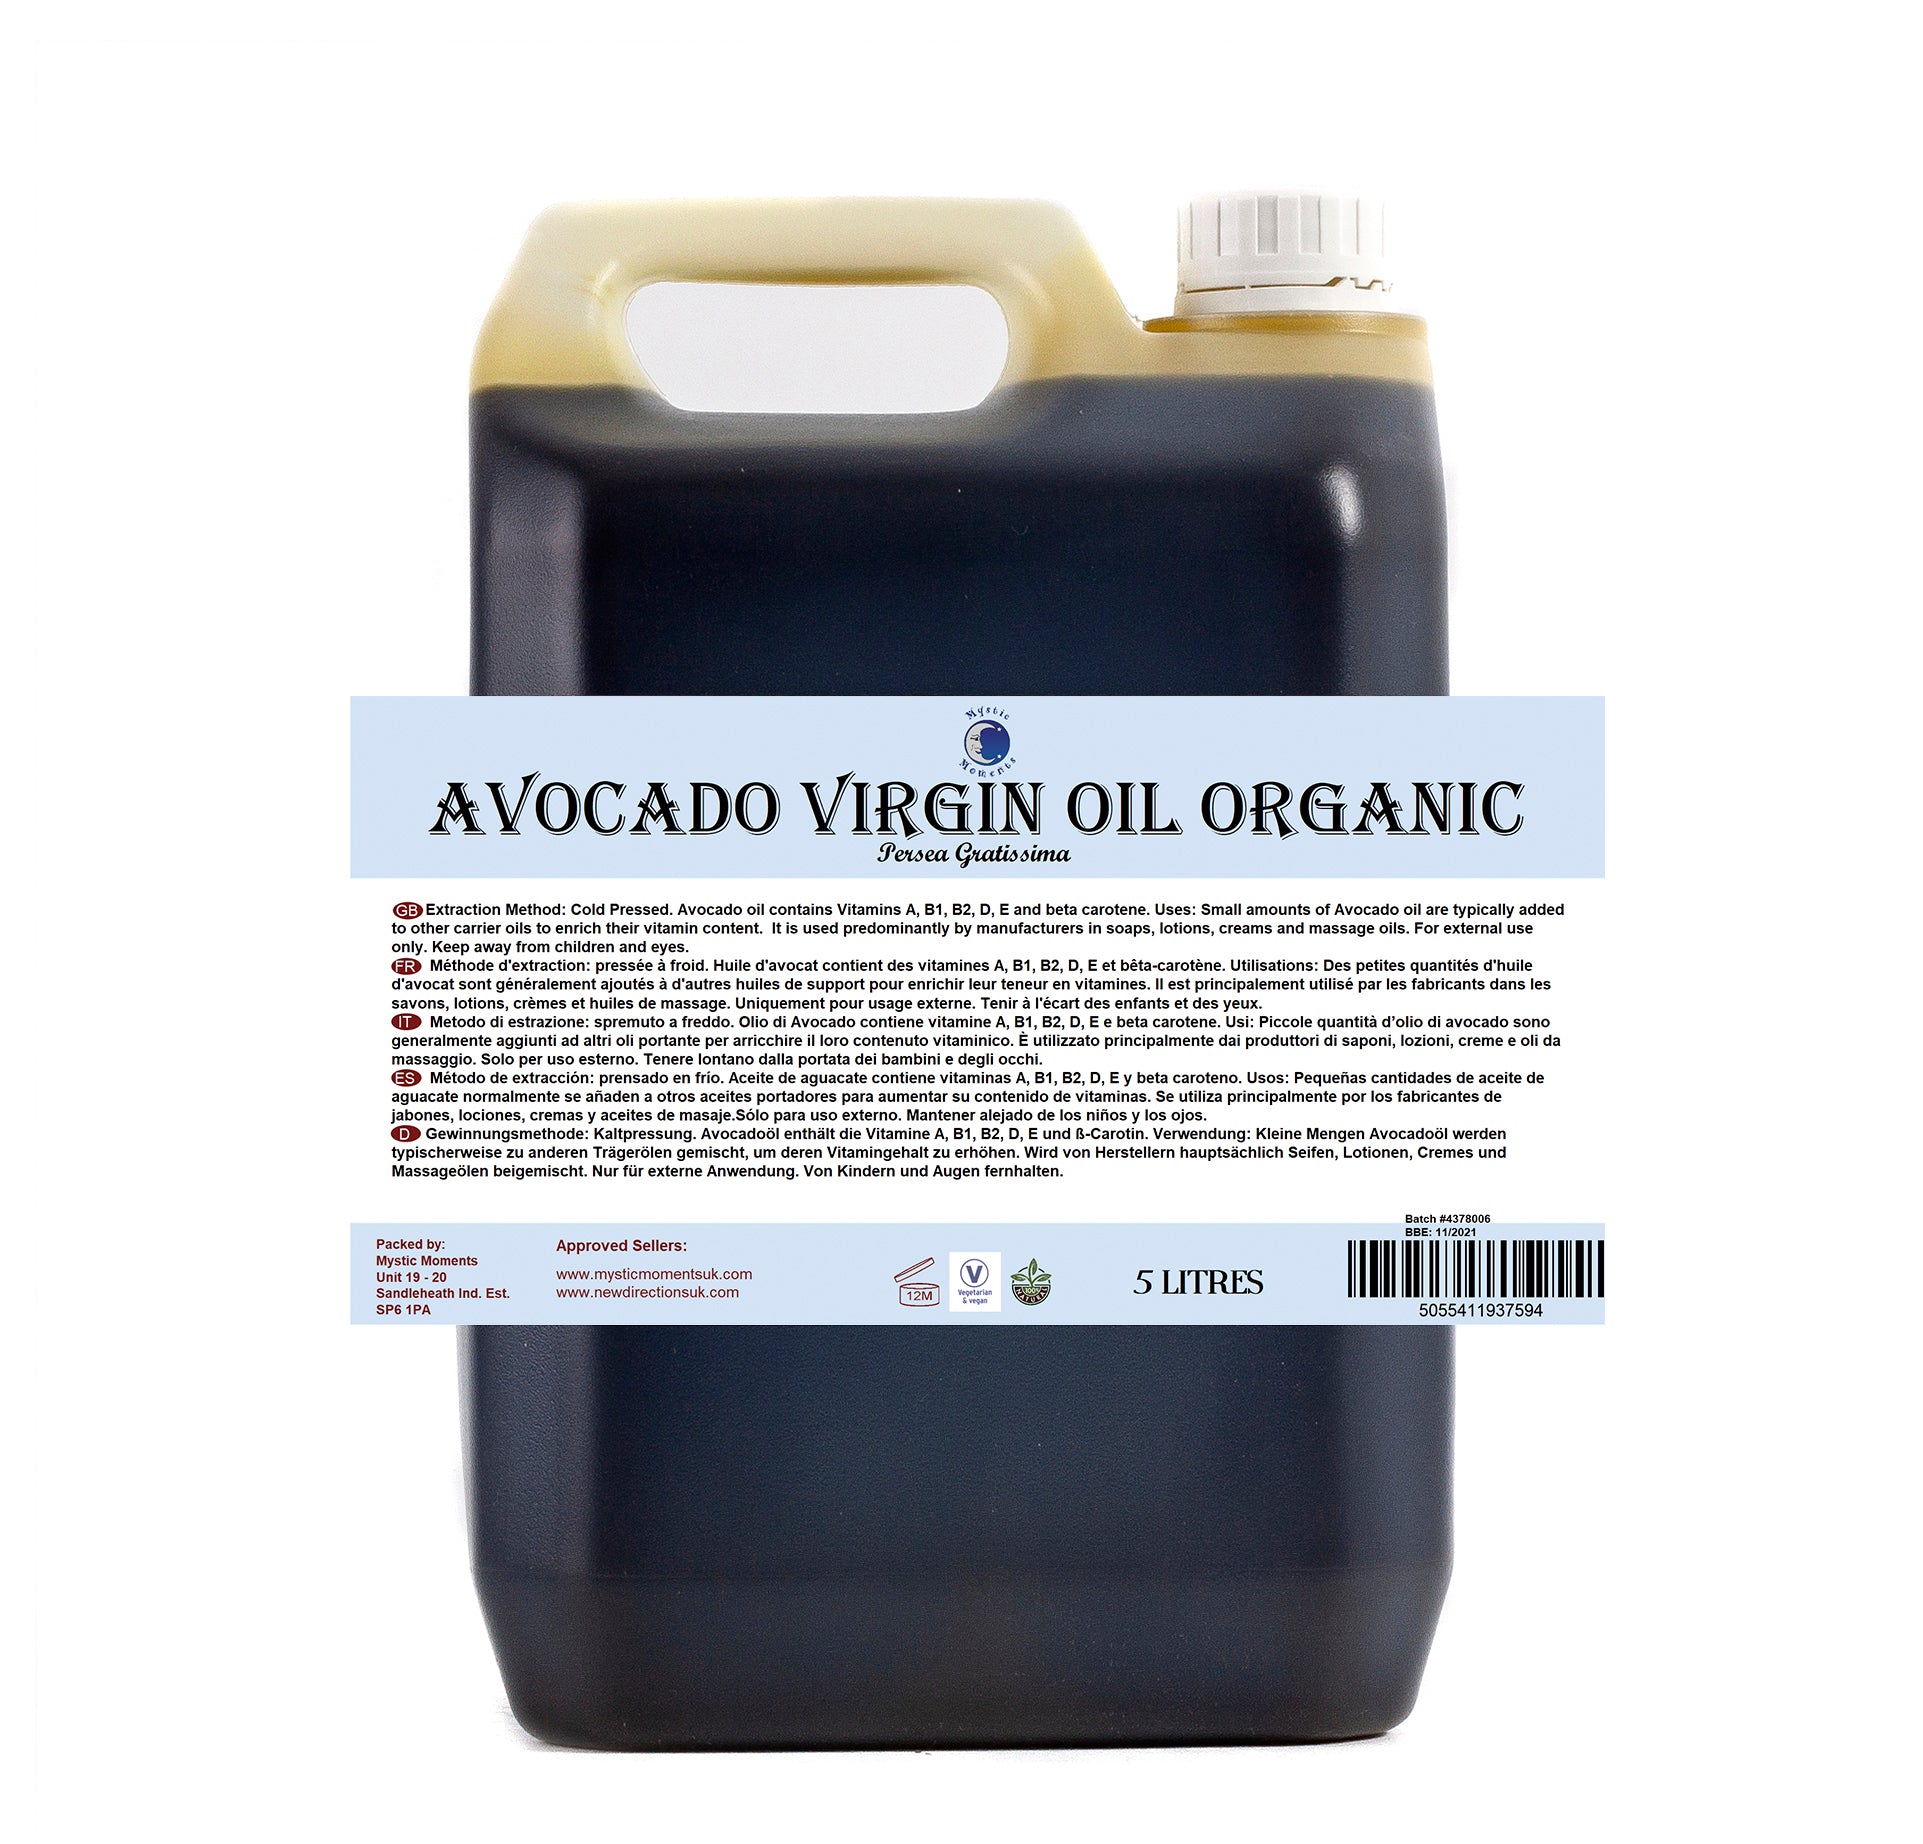 Avocado Virgin Organic Carrier Oil